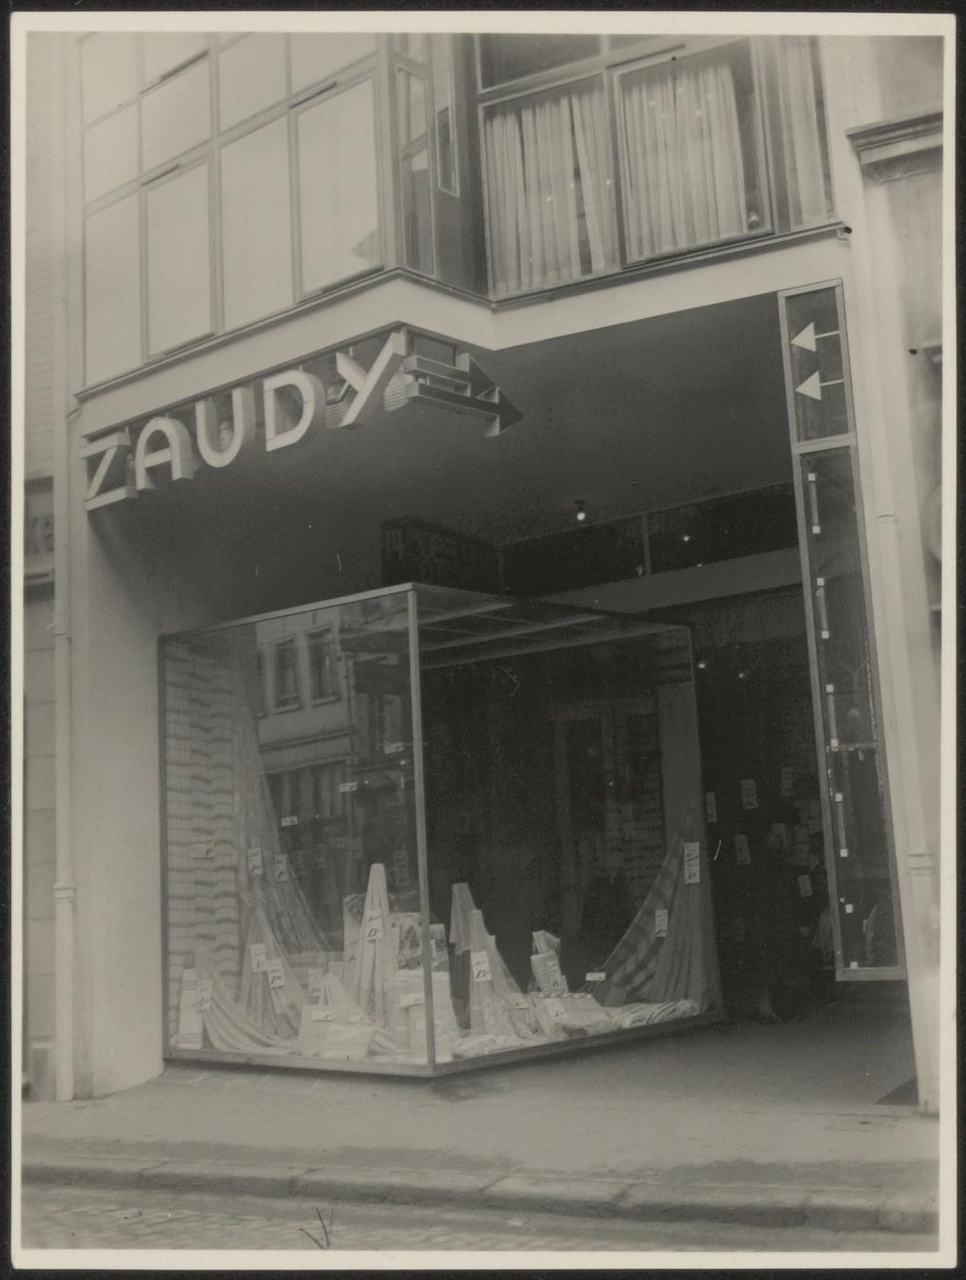 Afbeelding van winkel Zaudy, onderste helft, iets van links